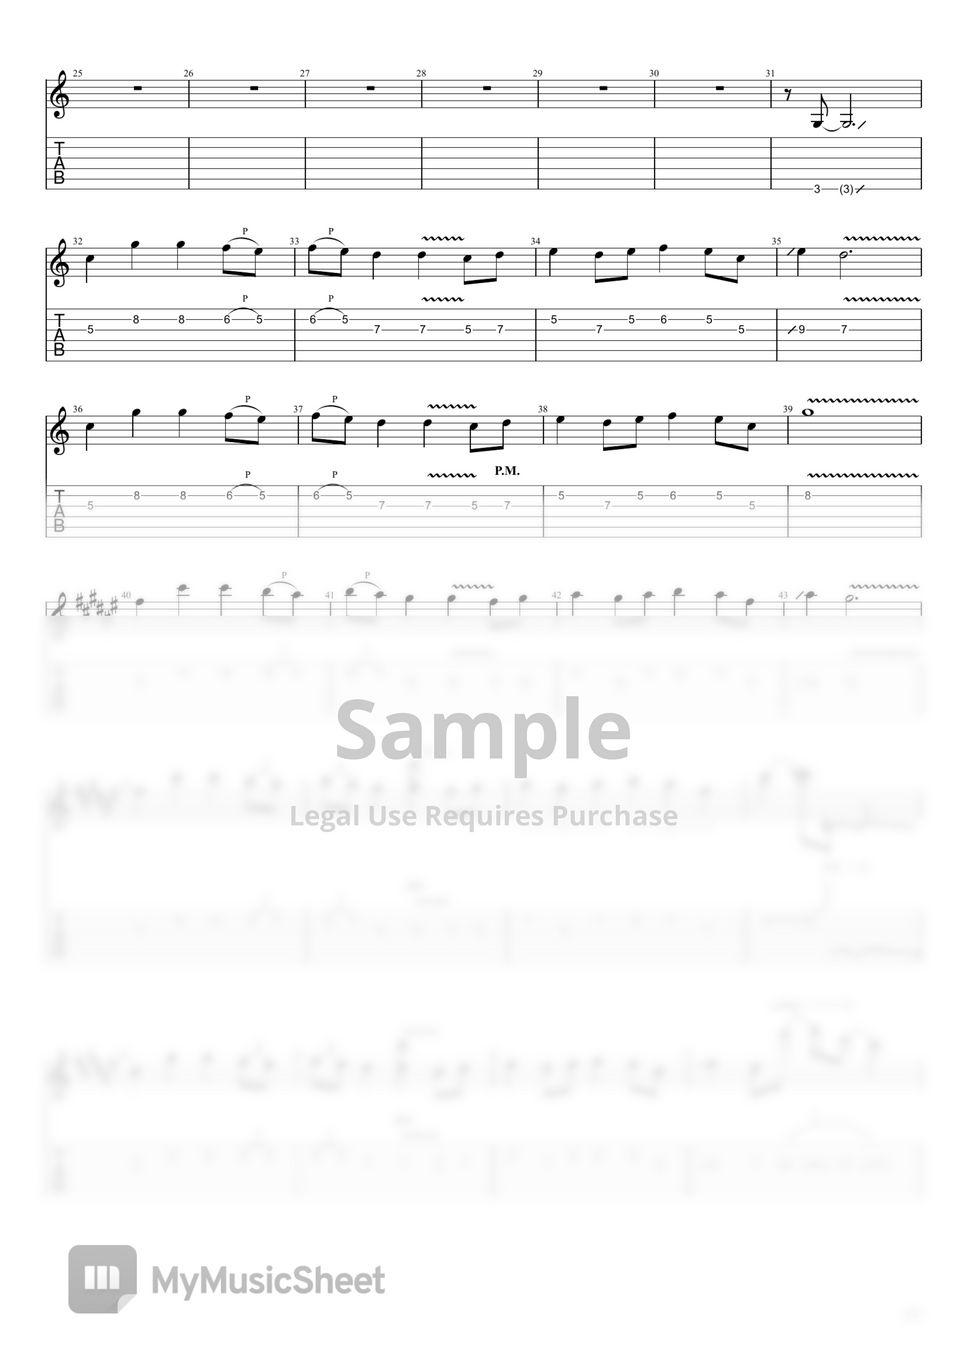 Top Gun - Top Gun Anthem (Very Easy Level, Lead Guitar) (Faltermeyer  Harold) - Guitar Tabs and Sheet Music